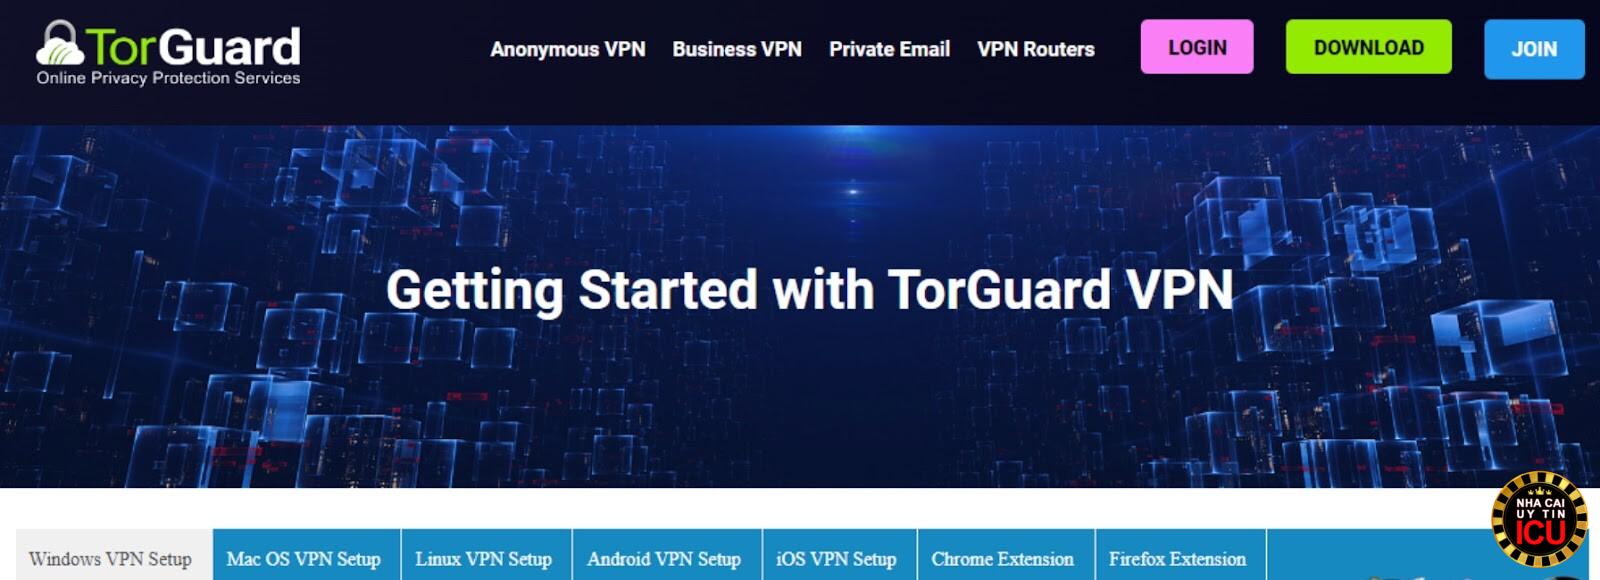 Tính năng được cung cấp bởi TorGuard VPN vô cùng đảm bảo về chất lượng an ninh